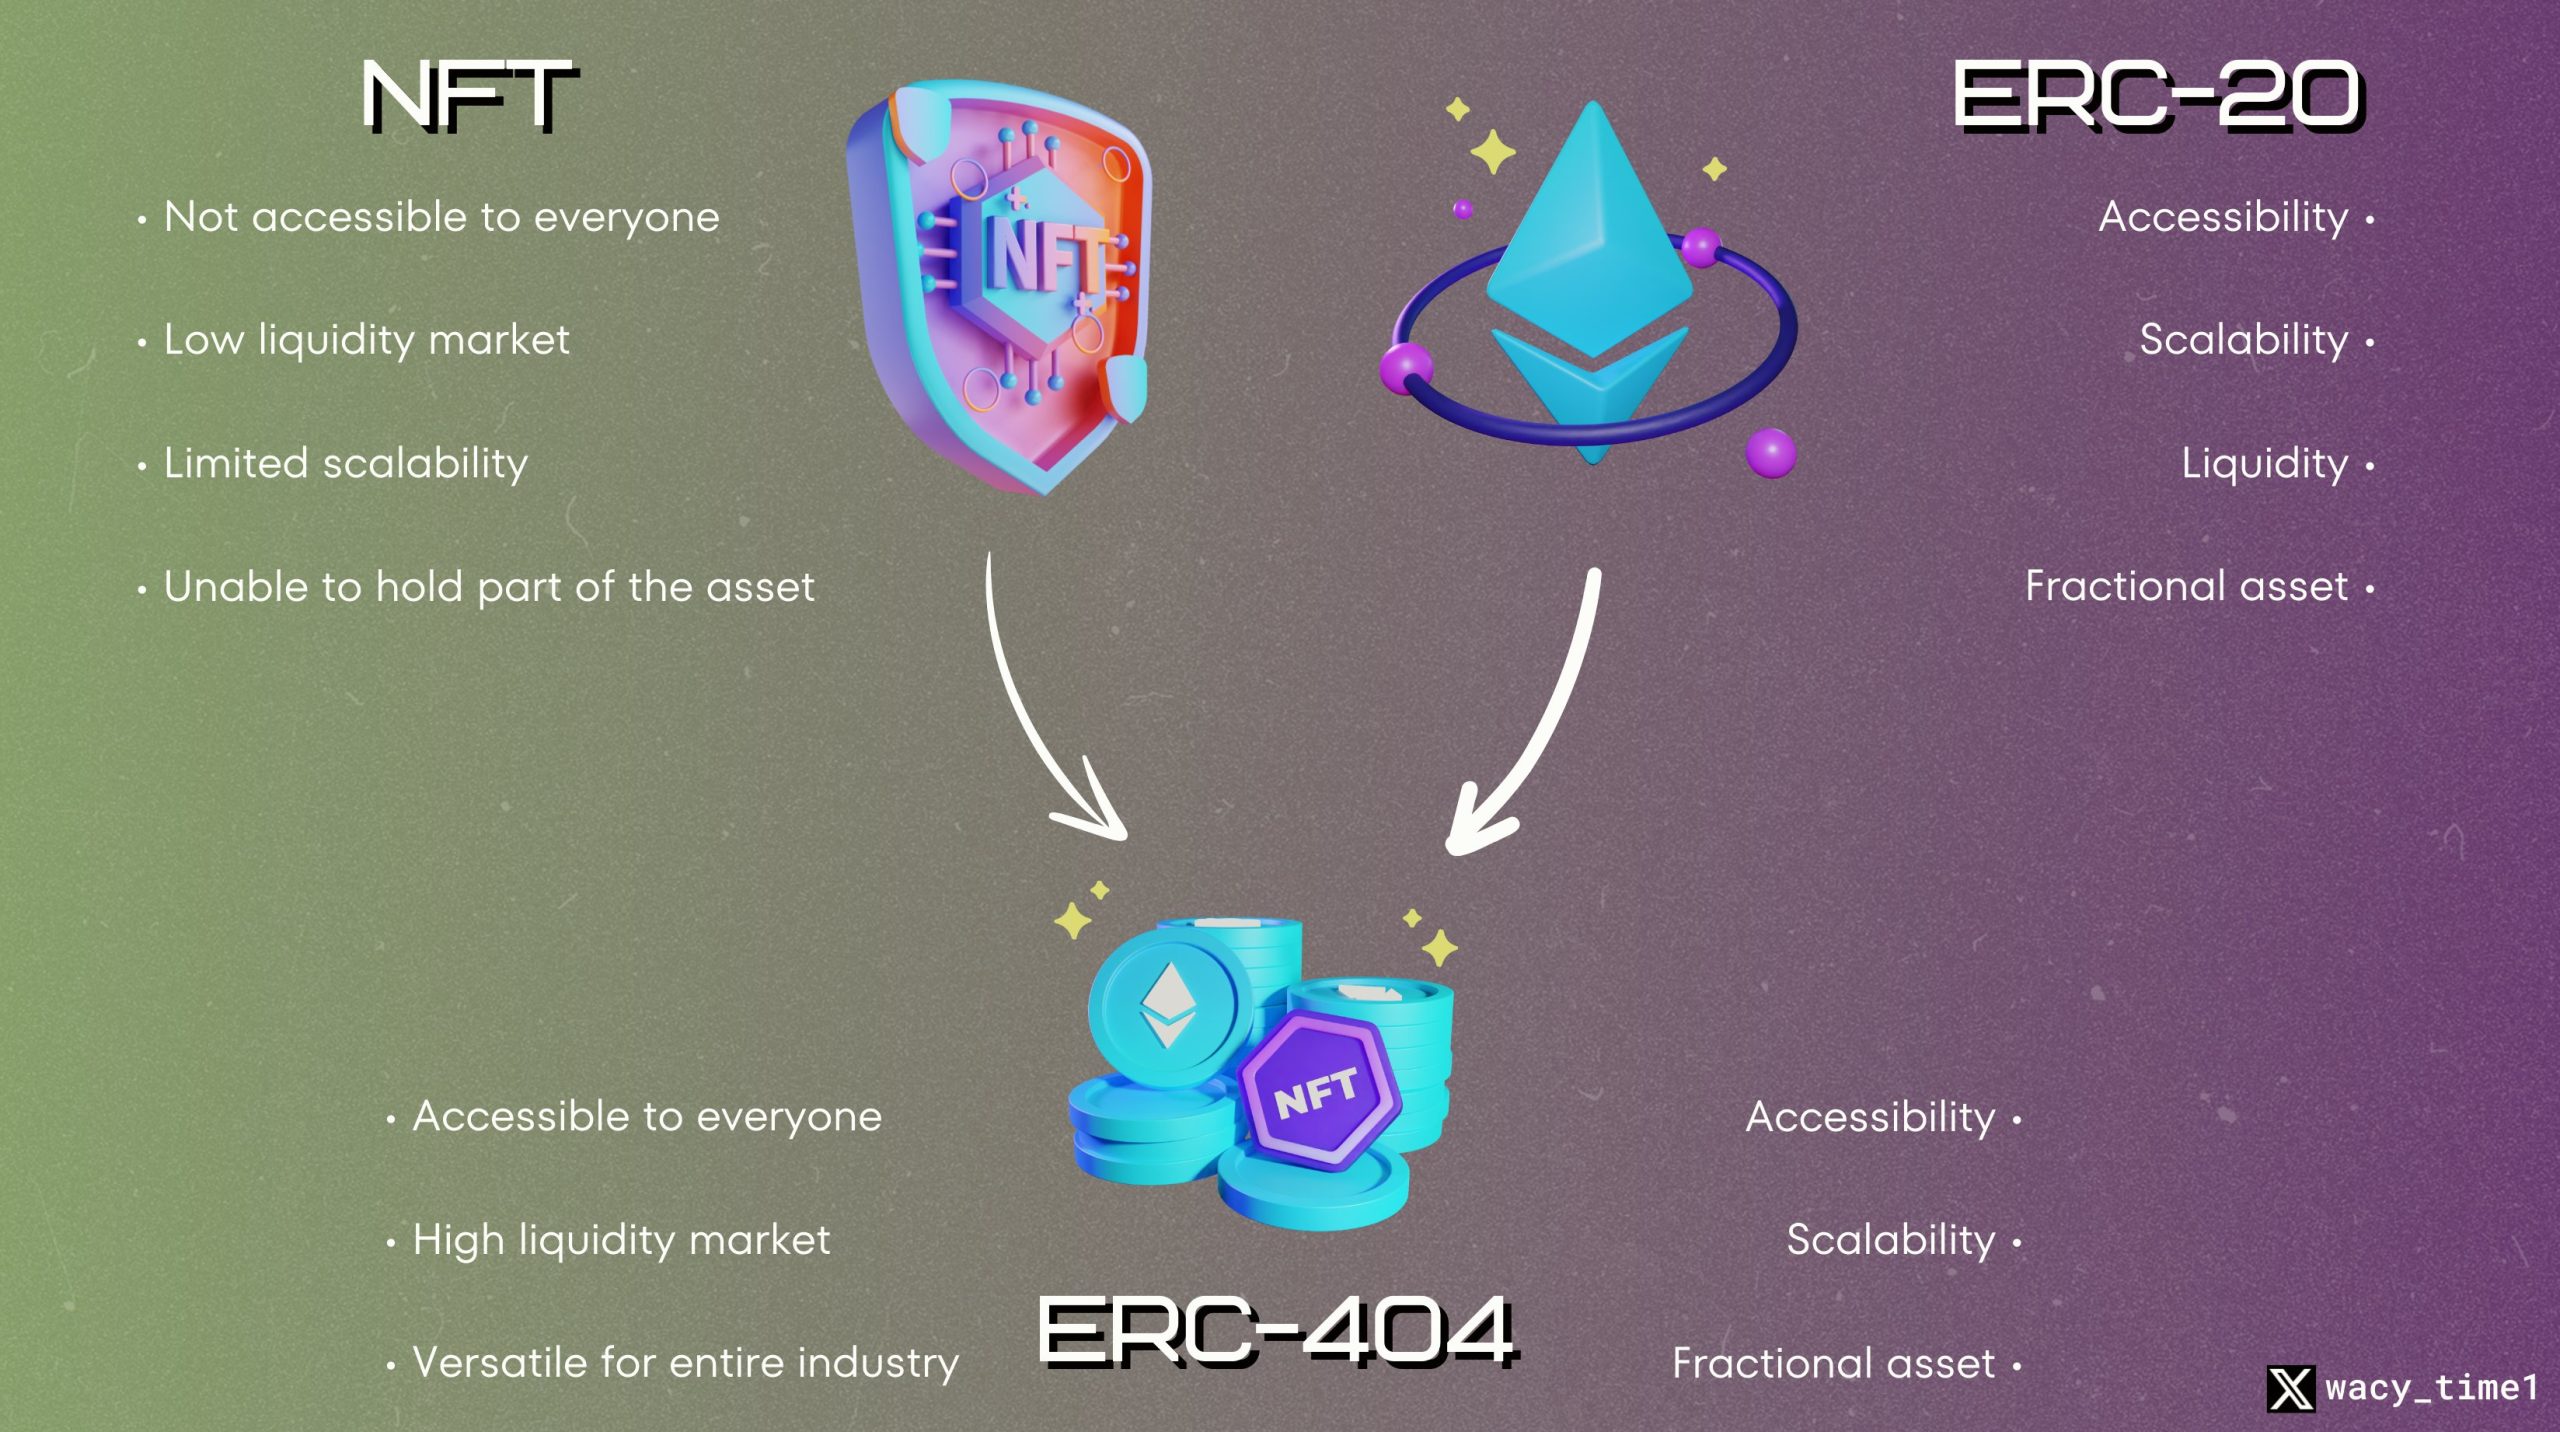 Erc-404